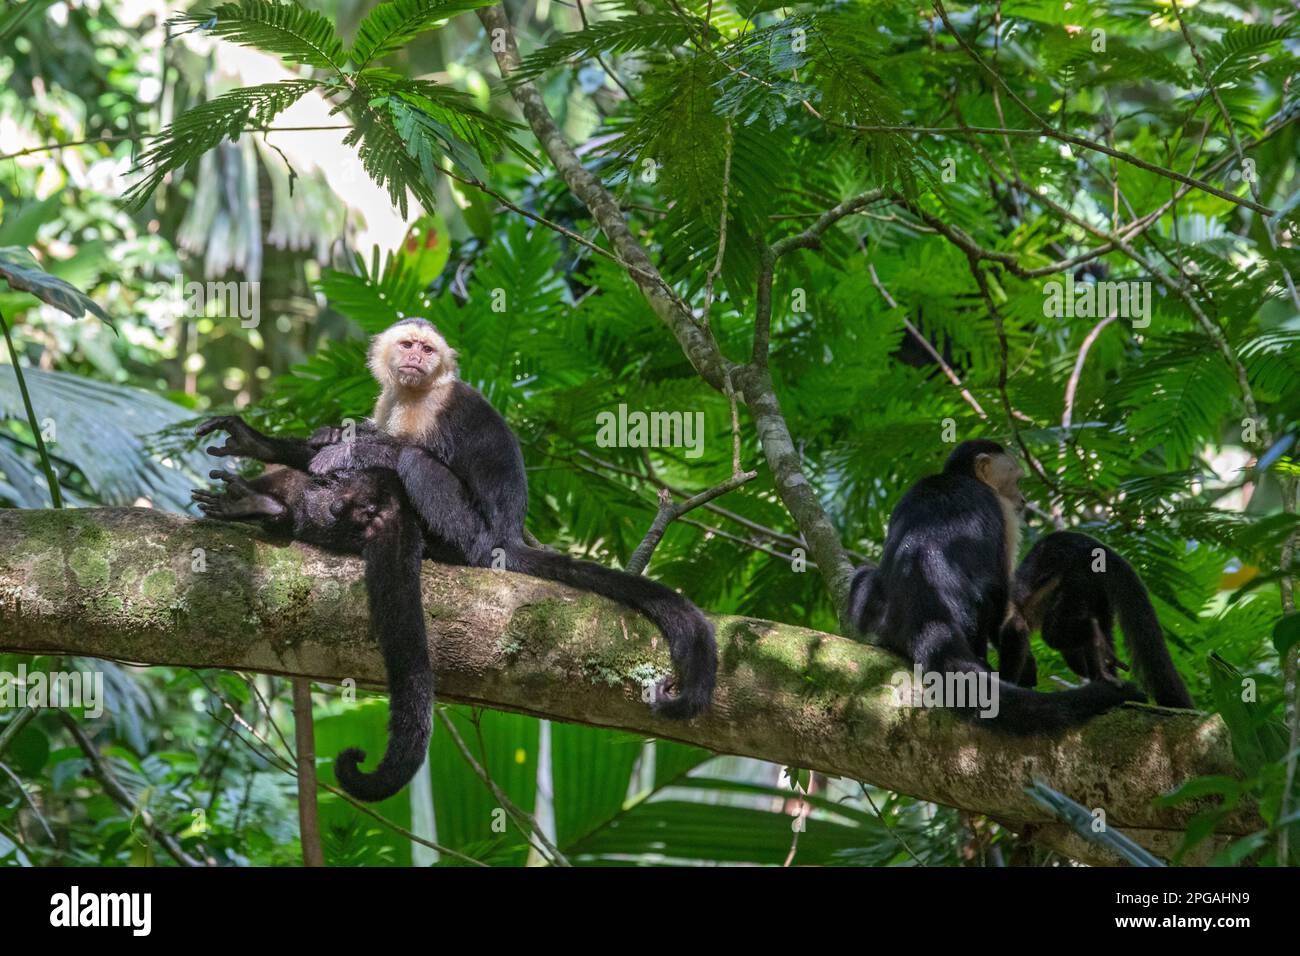 Parco Nazionale di Tortuguero, Costa Rica - scimmie cappuccine panamaniane dalla facciata bianca (Cebus imitator). Foto Stock